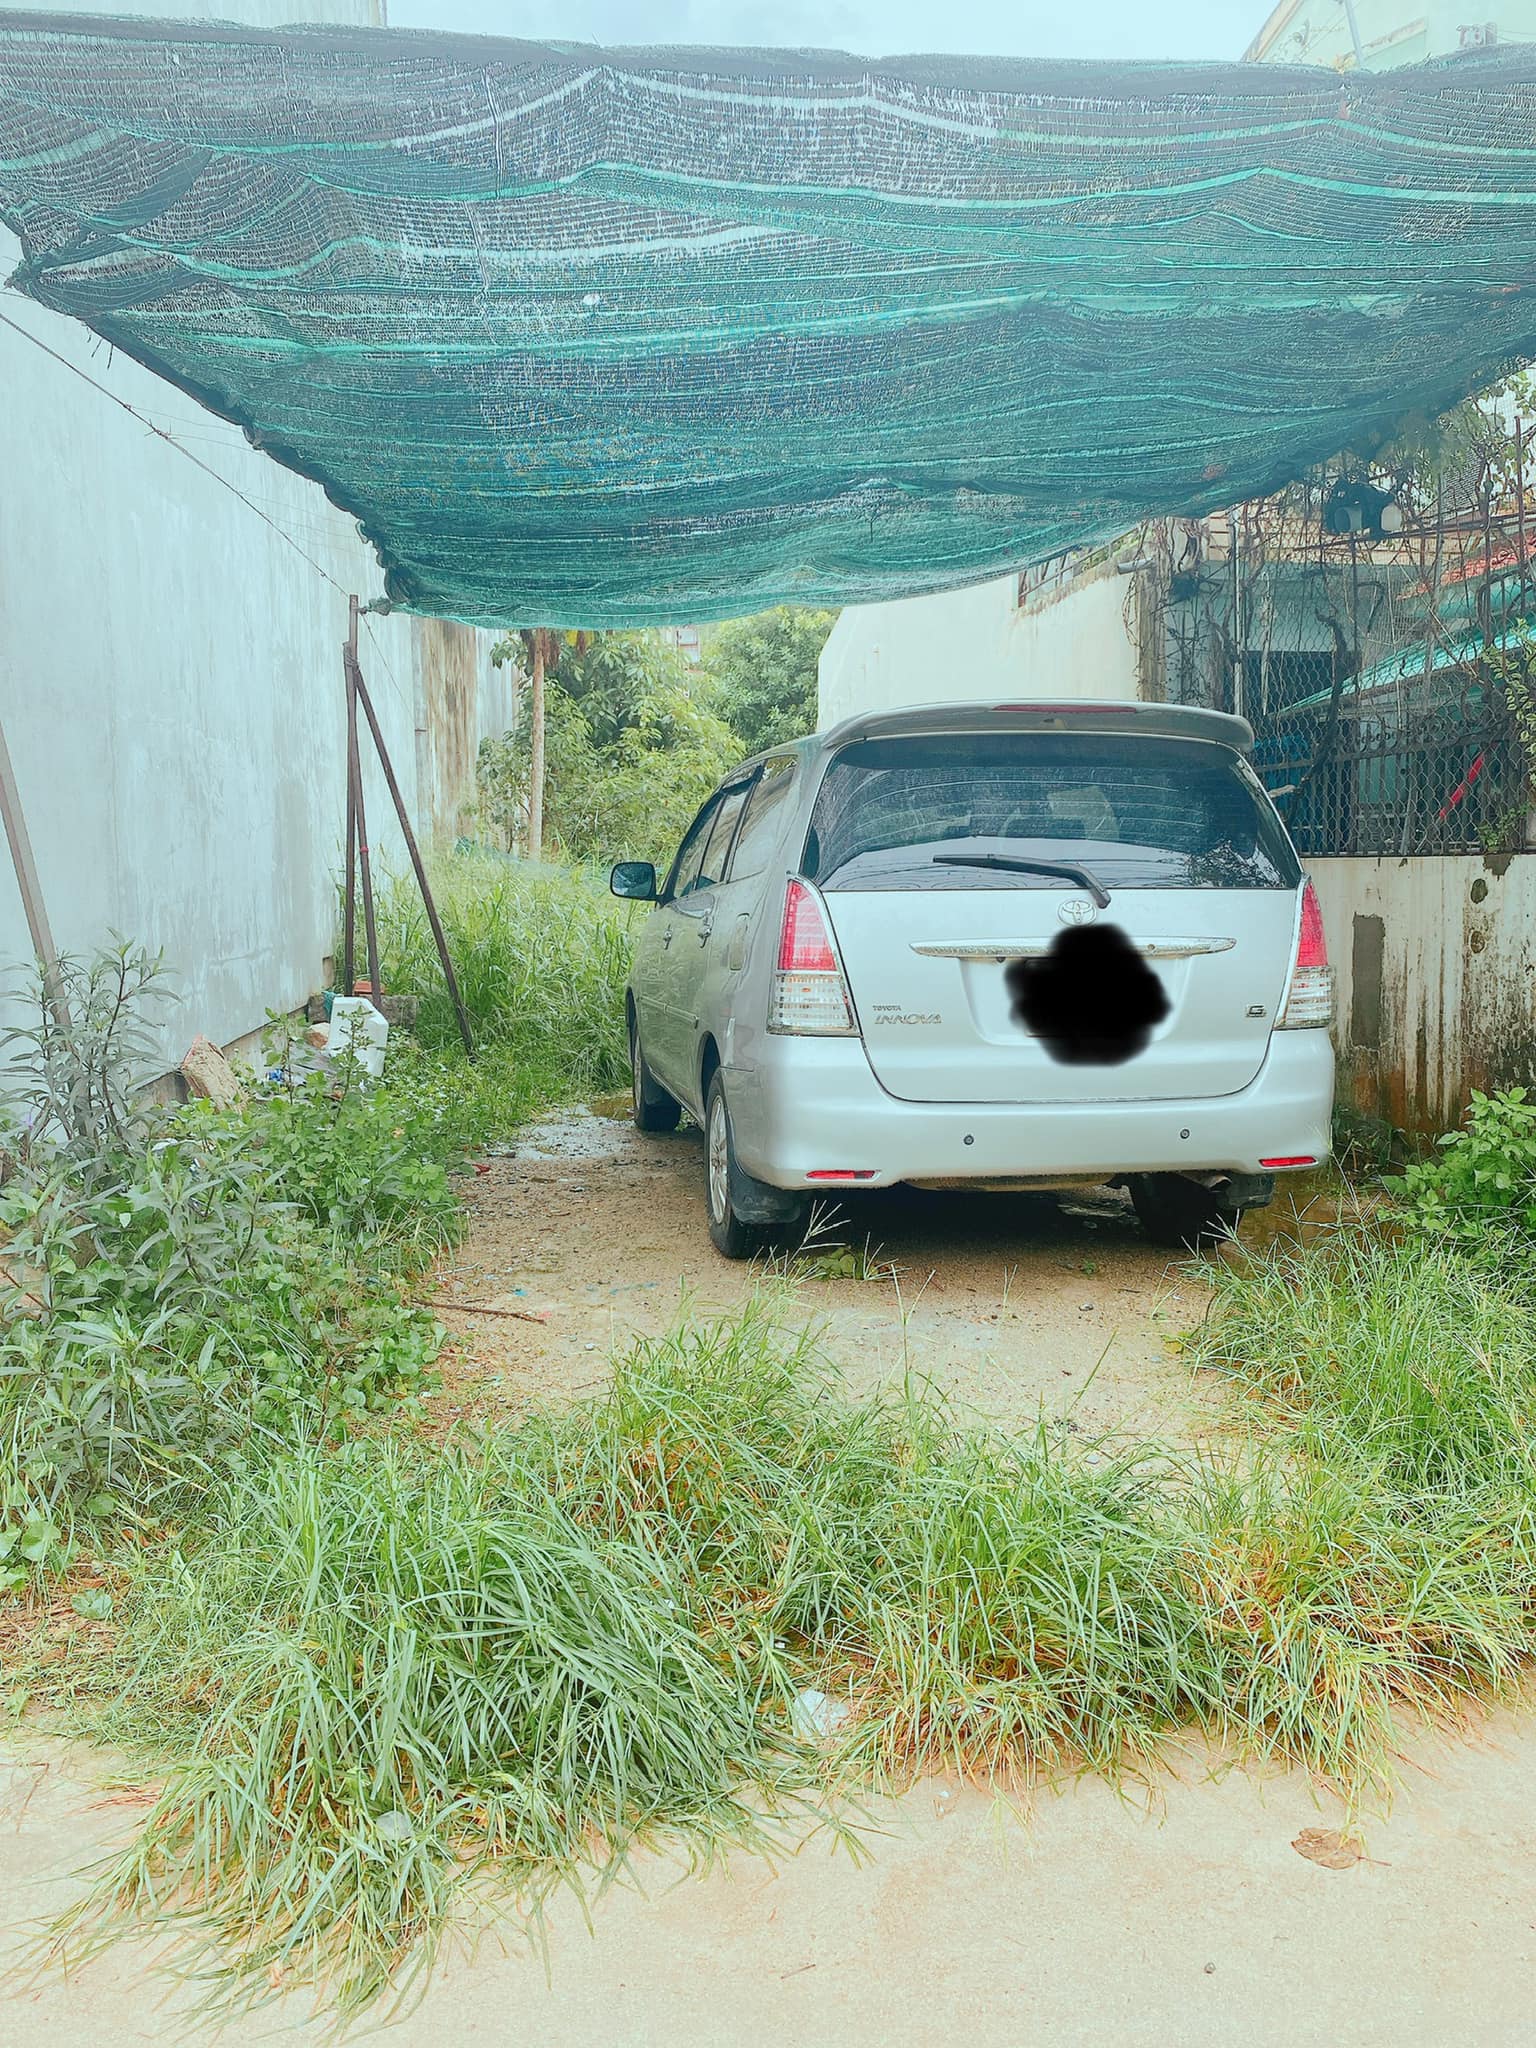 Bán lô đất hẻm đường ô tô phường Vĩnh Hải